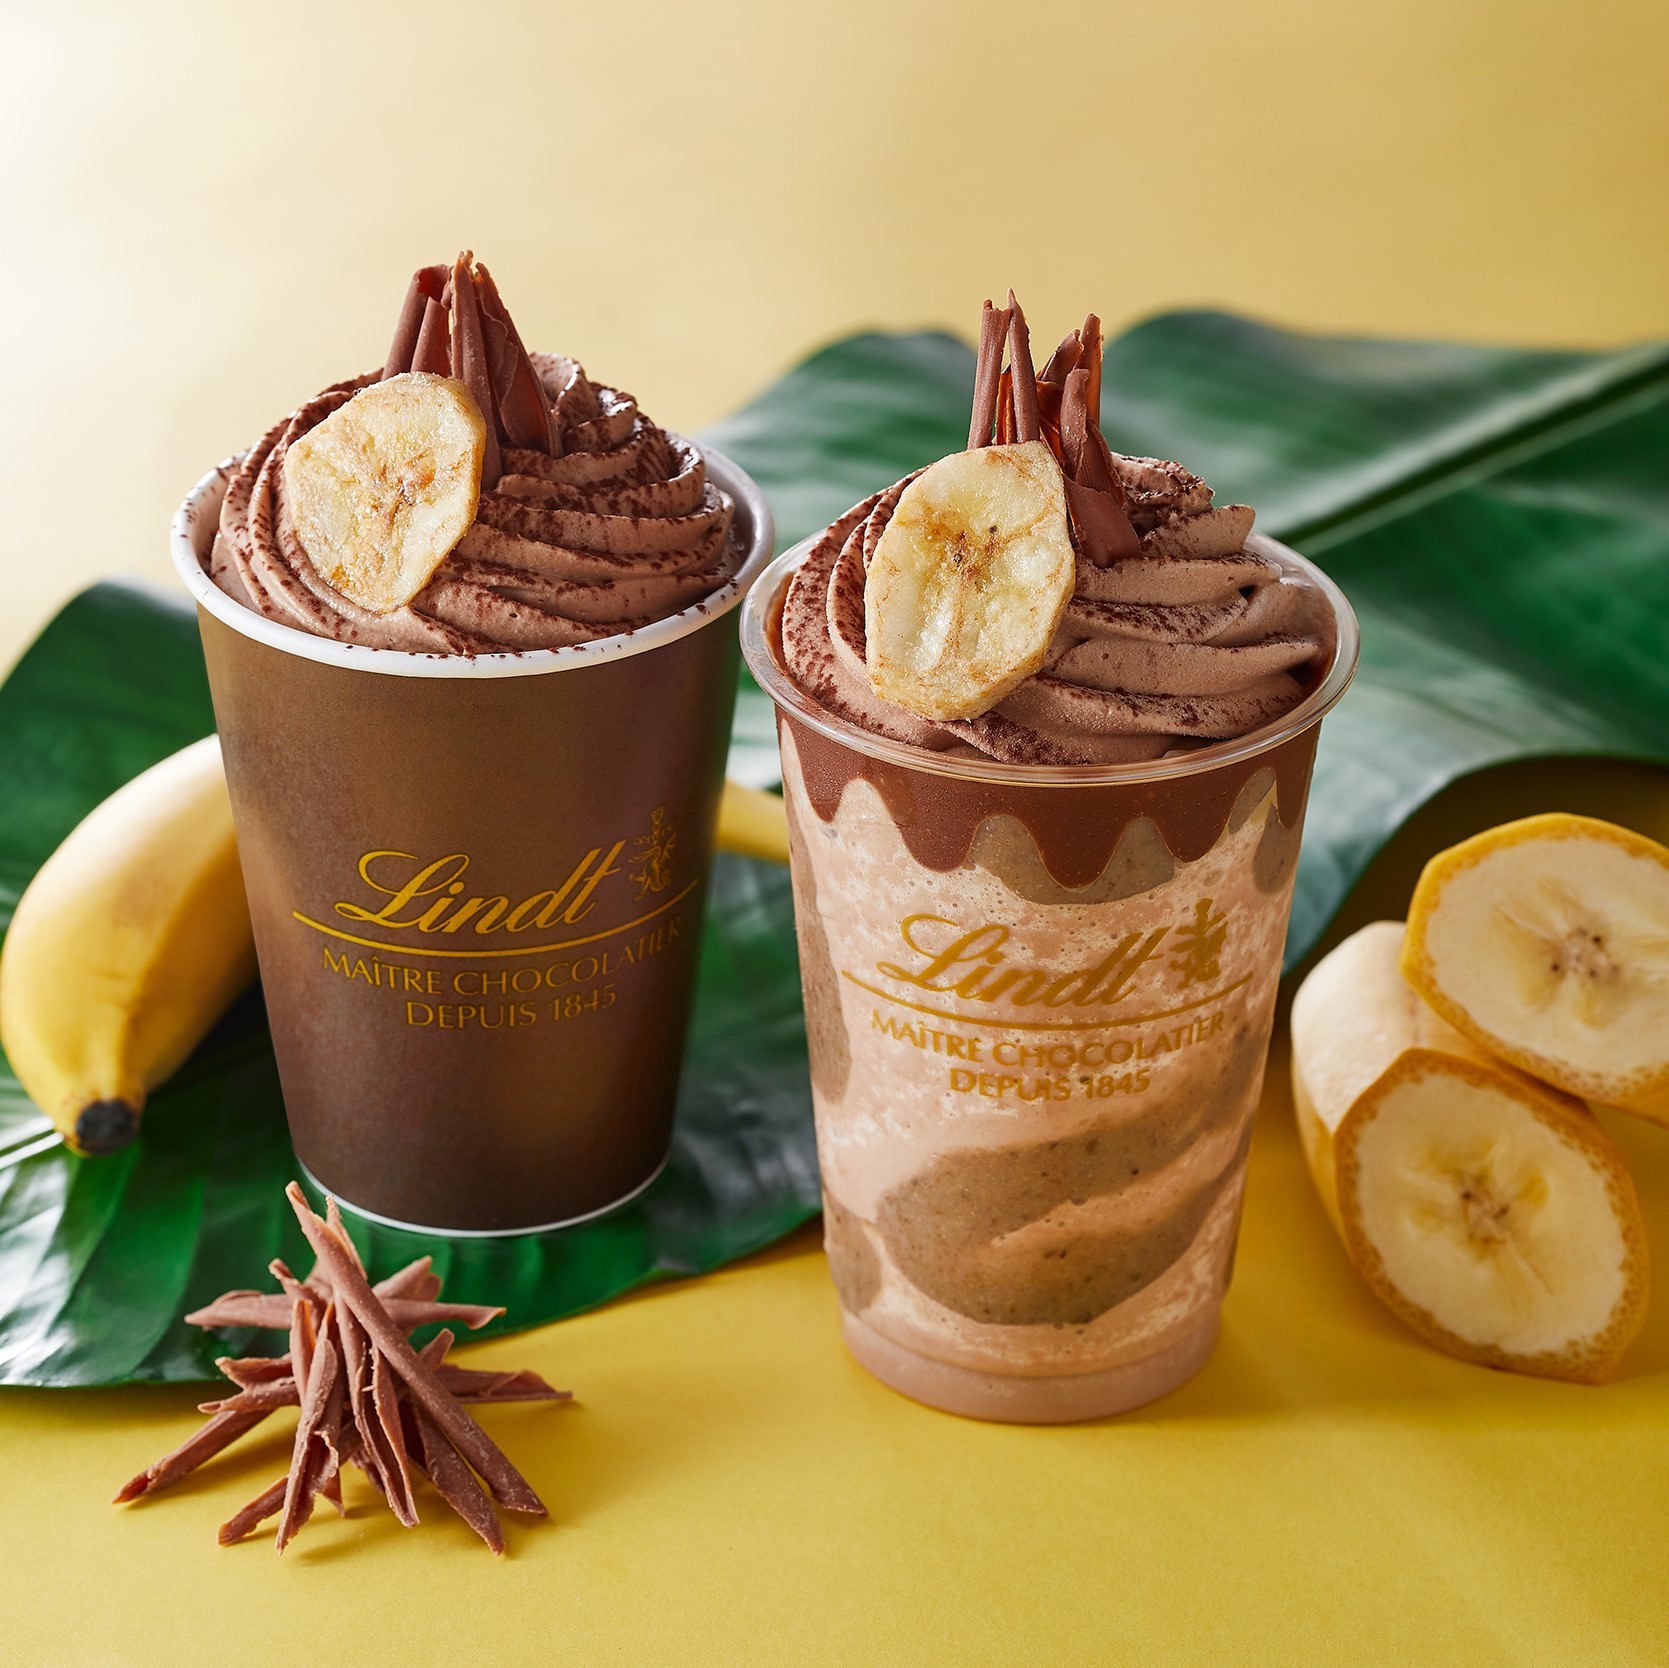 リンツ ショコラ カフェ、夏にぴったり、
新チョコレートドリンクが登場　
チョコレートと相性抜群「バナナ」7月1日新発売